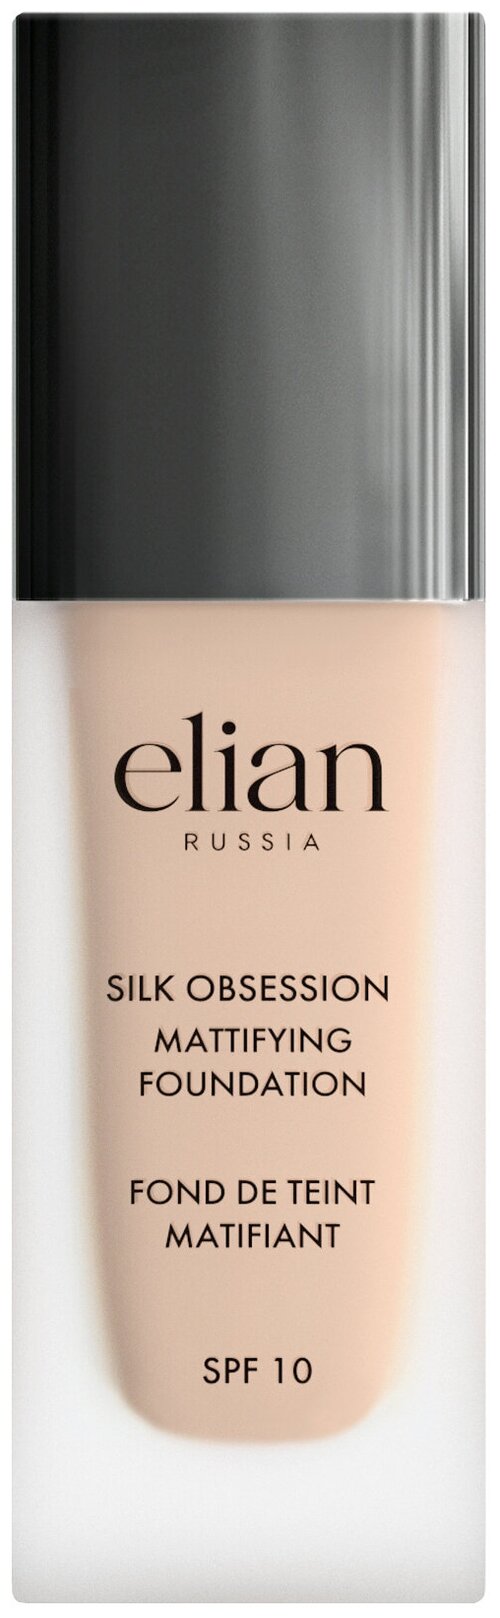 Elian Russia Тональный крем Silk Obsession Mattifying Foundation, 35 мл, оттенок: 20 Caramel, 1 шт.